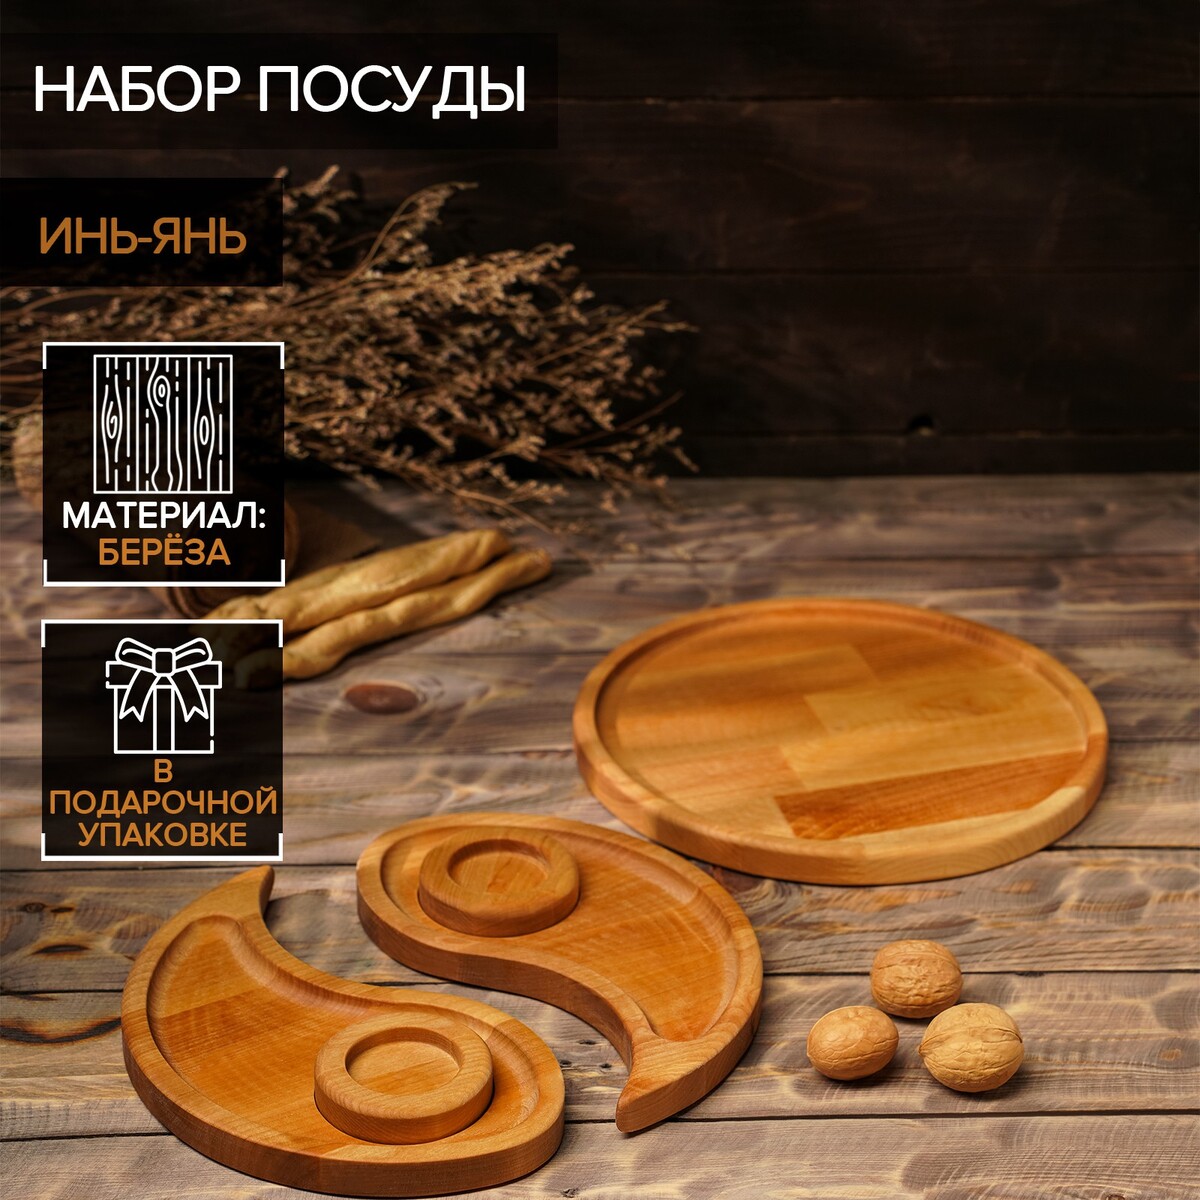 Подарочный набор деревянной посуды adelica подарочный набор деревянной посуды adelica блюдо для подачи к пиву открывашка для бутылок 25×22×1 8 см 12×5×1 8 см береза